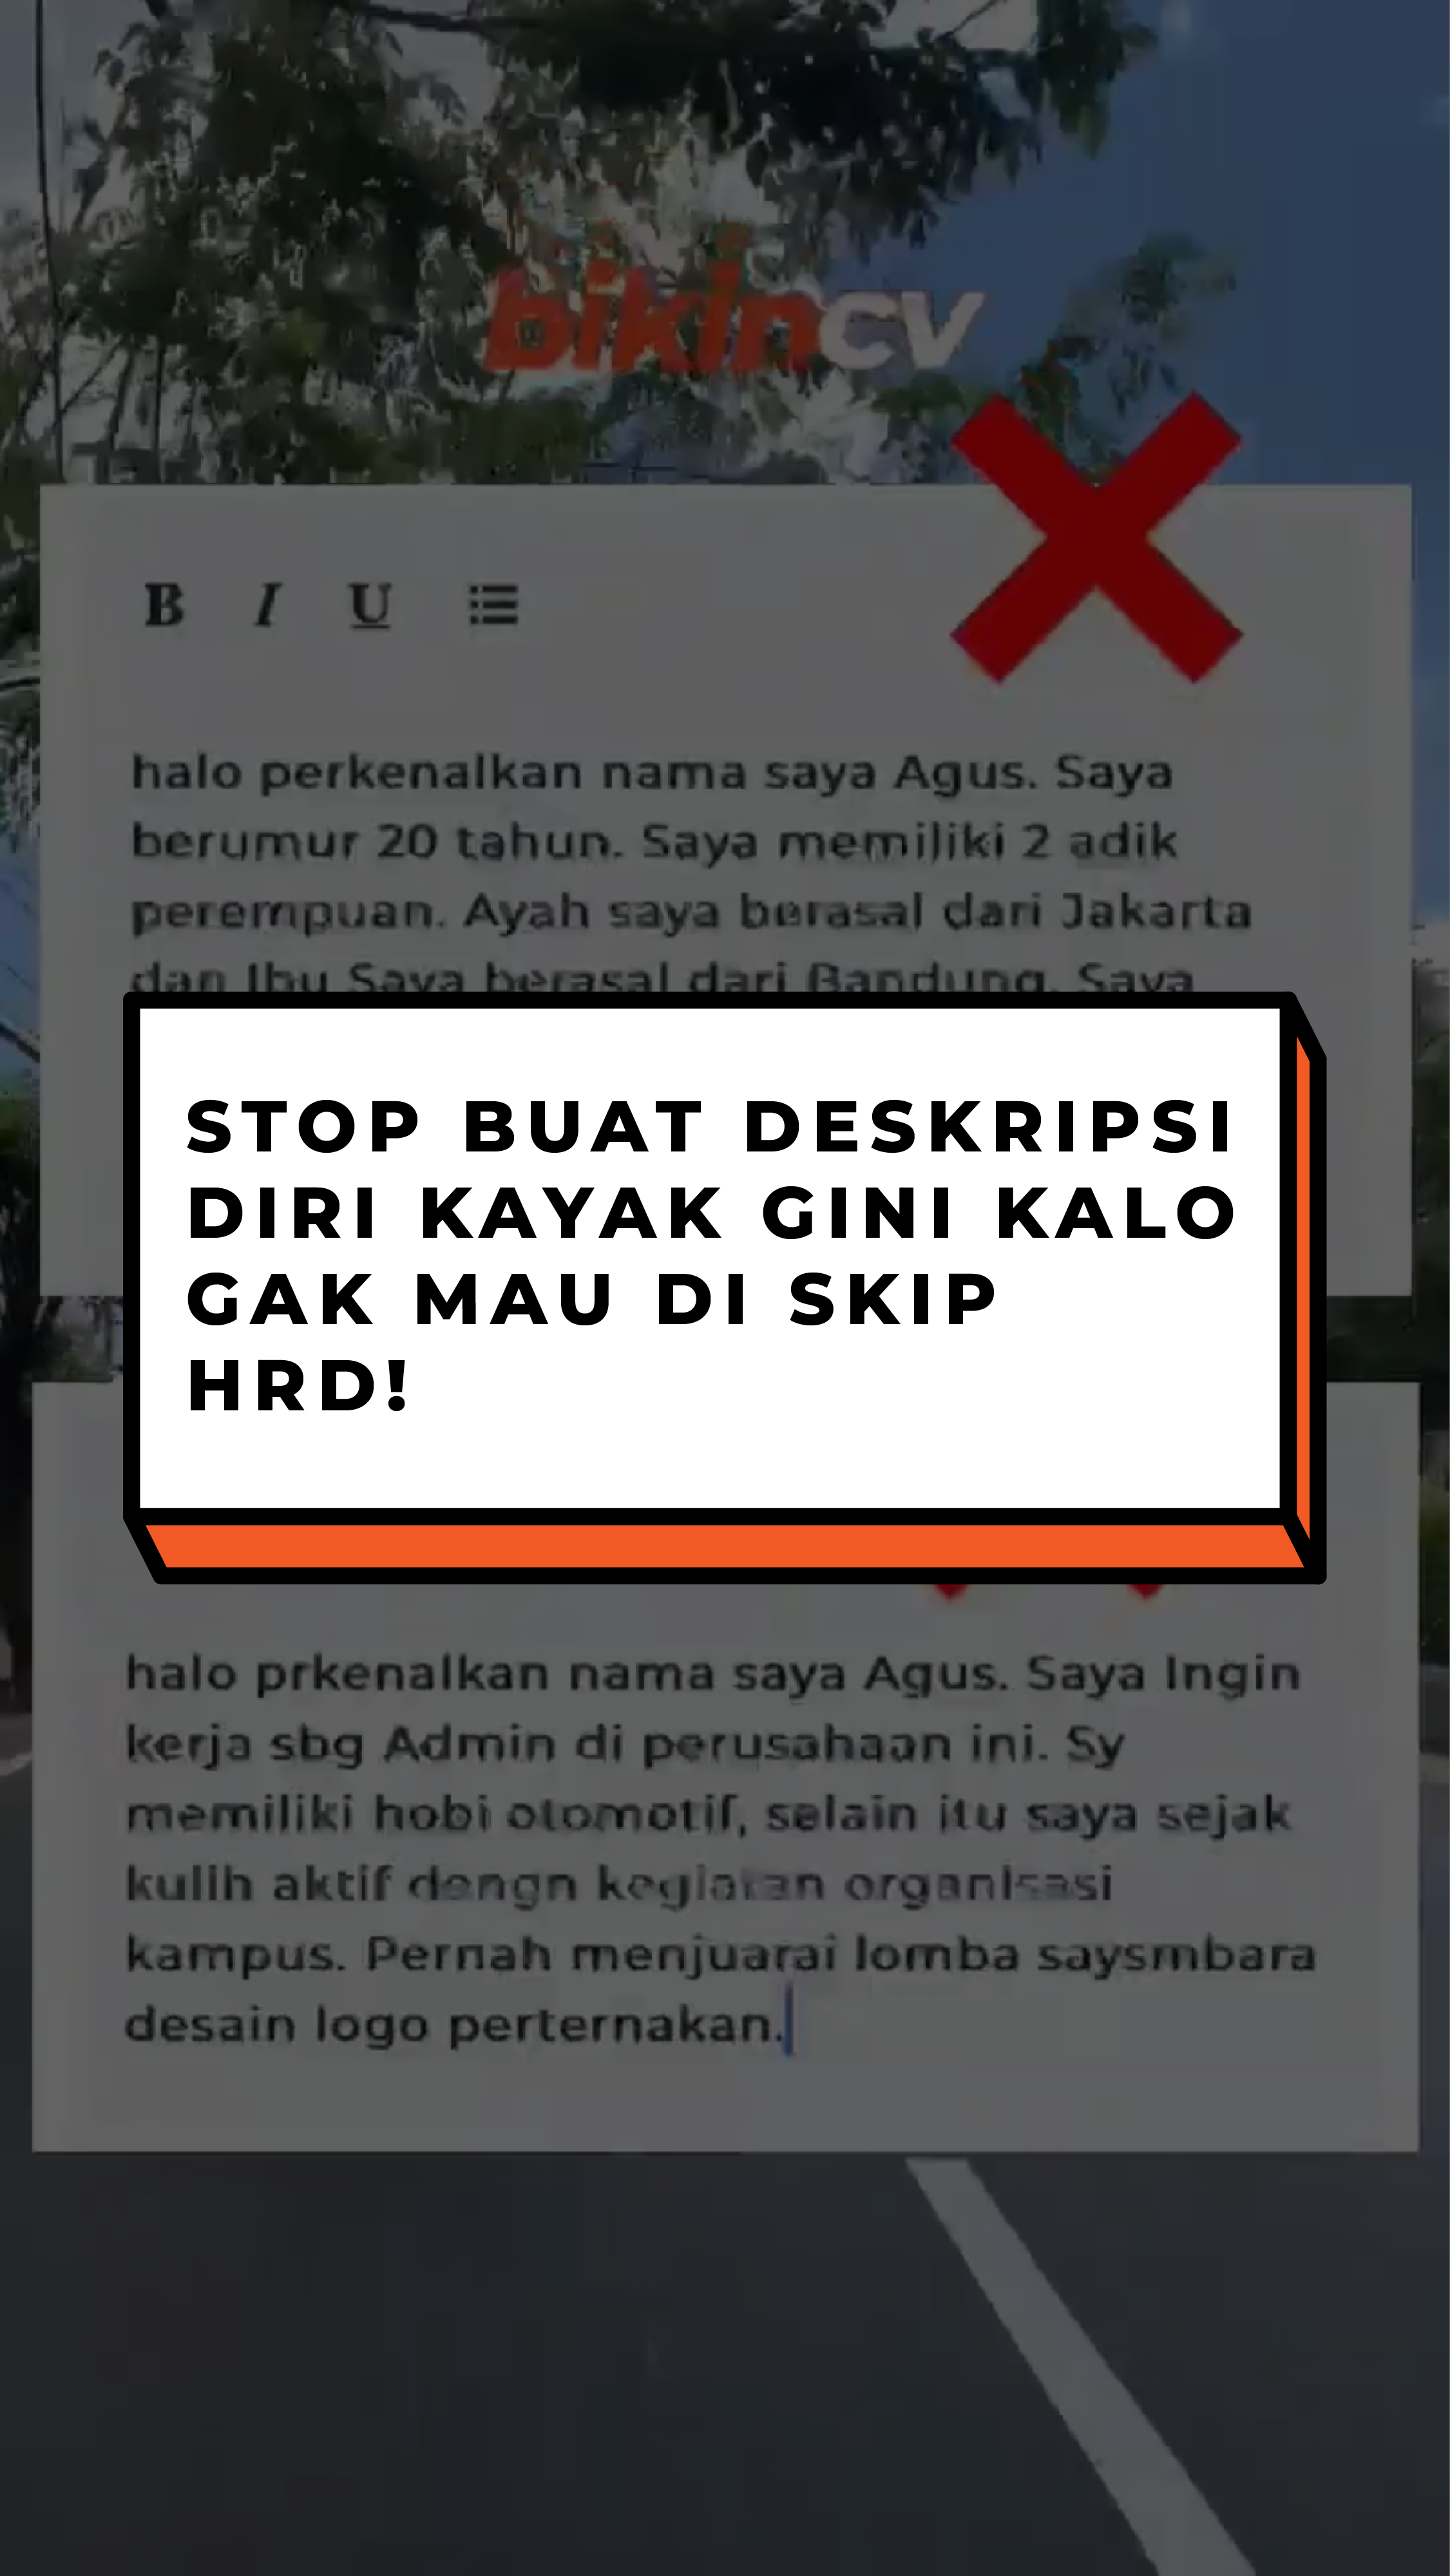 Stop Buat Deskripsi Diri Kayak Gini Kalo Gak Mau Di Skip HRD!